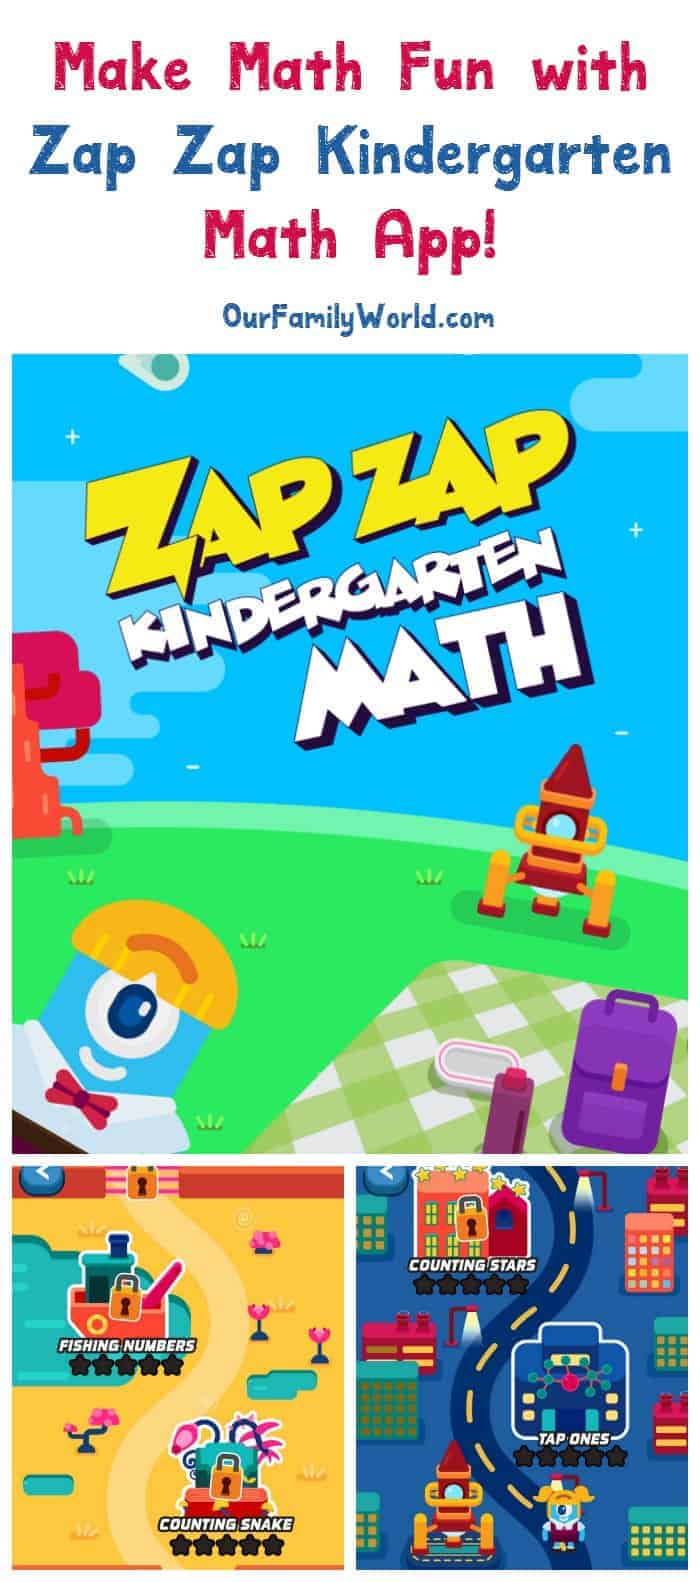 zap-zap-kindergarten-math-app-review